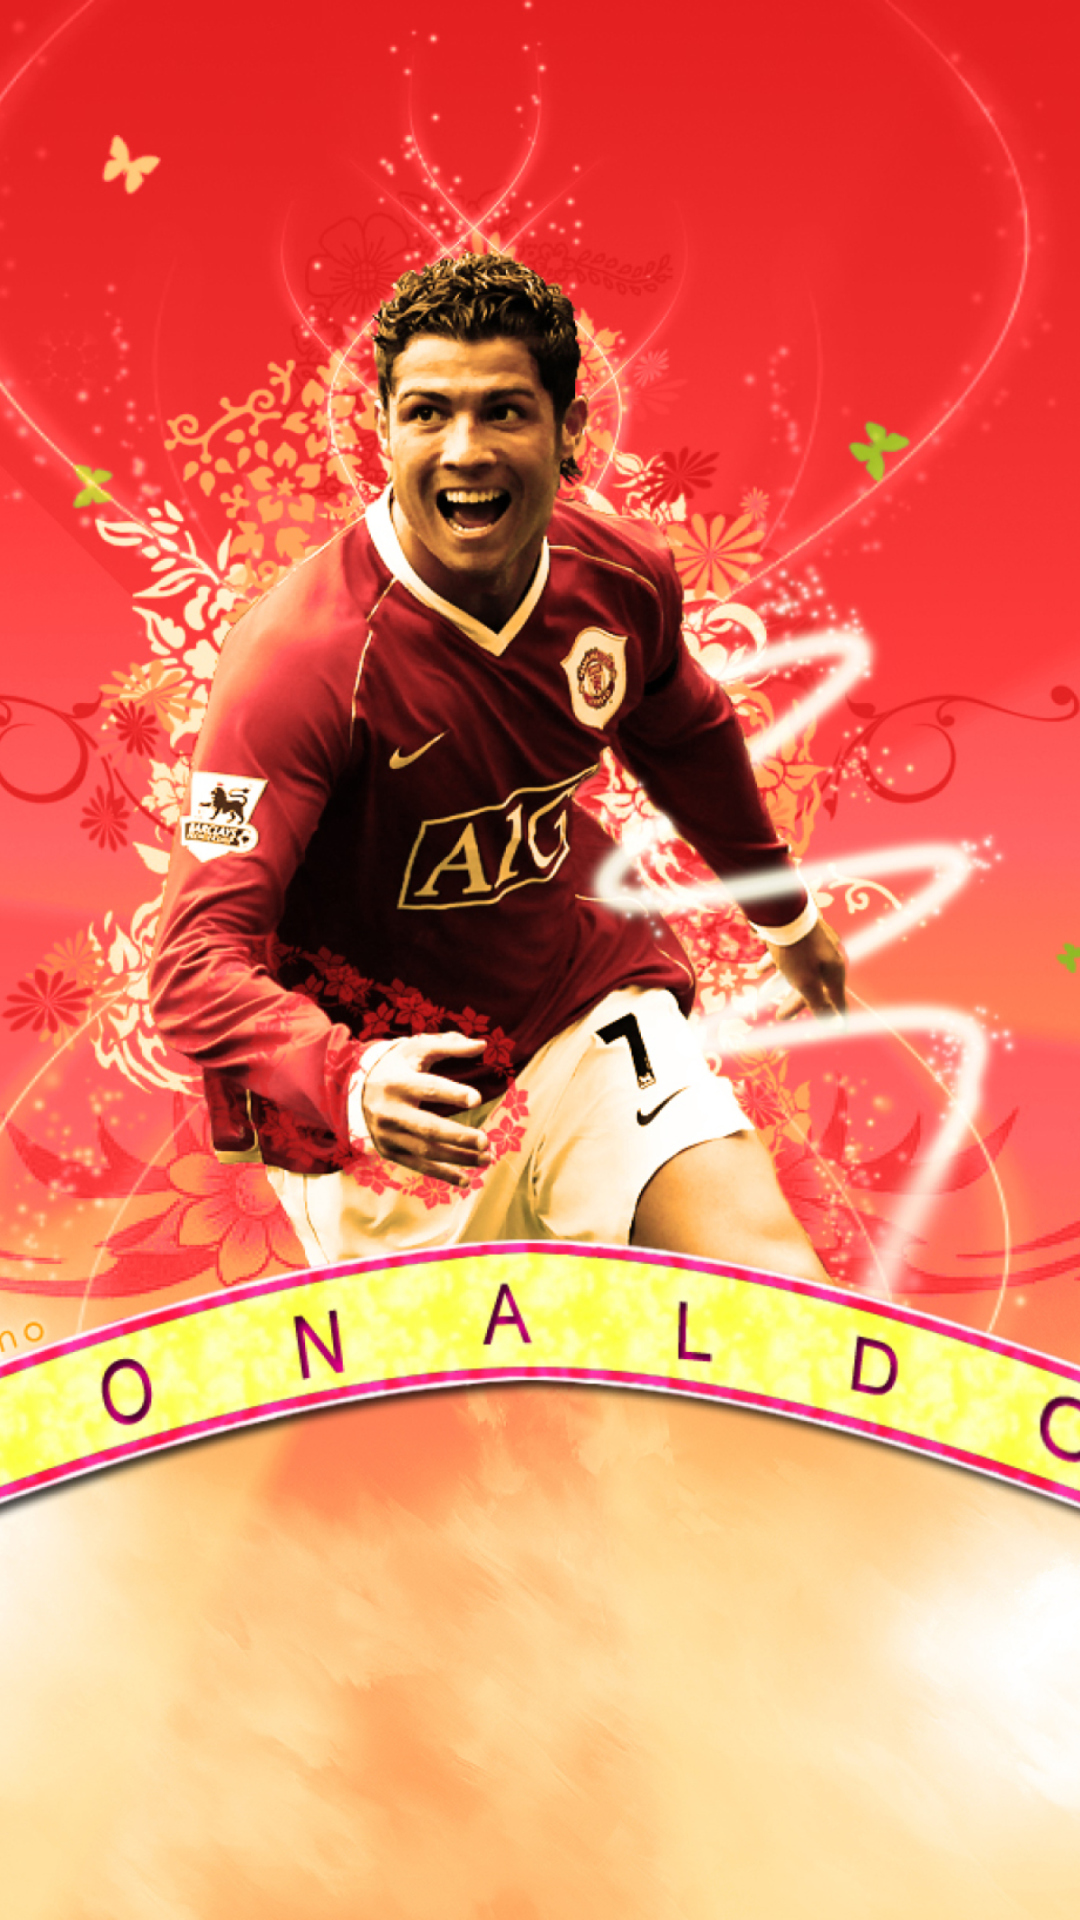 Cristiano Ronaldo wallpaper 1080x1920